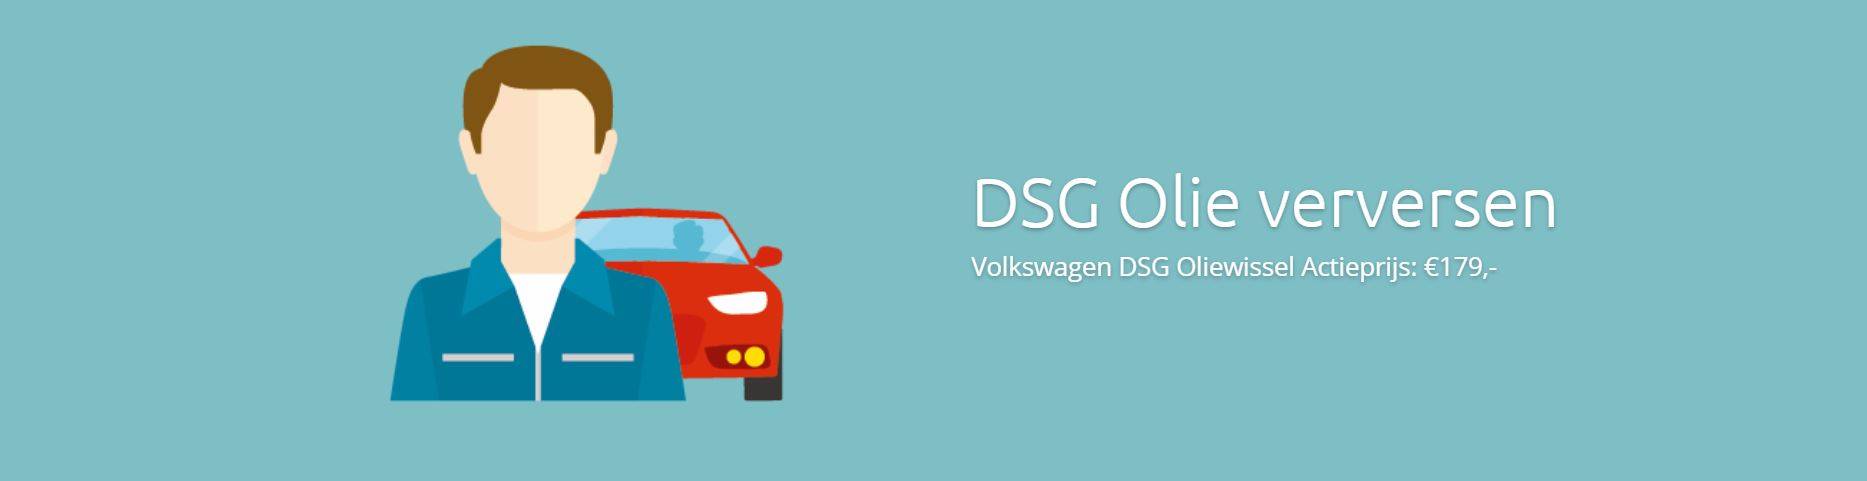 Volkswagen DSG Olie Verversen Volkswagen DSG Olie Verversen Actieprijs €179 oliewissel Volkswagen is bij DSG Service Dealer erg gunstig